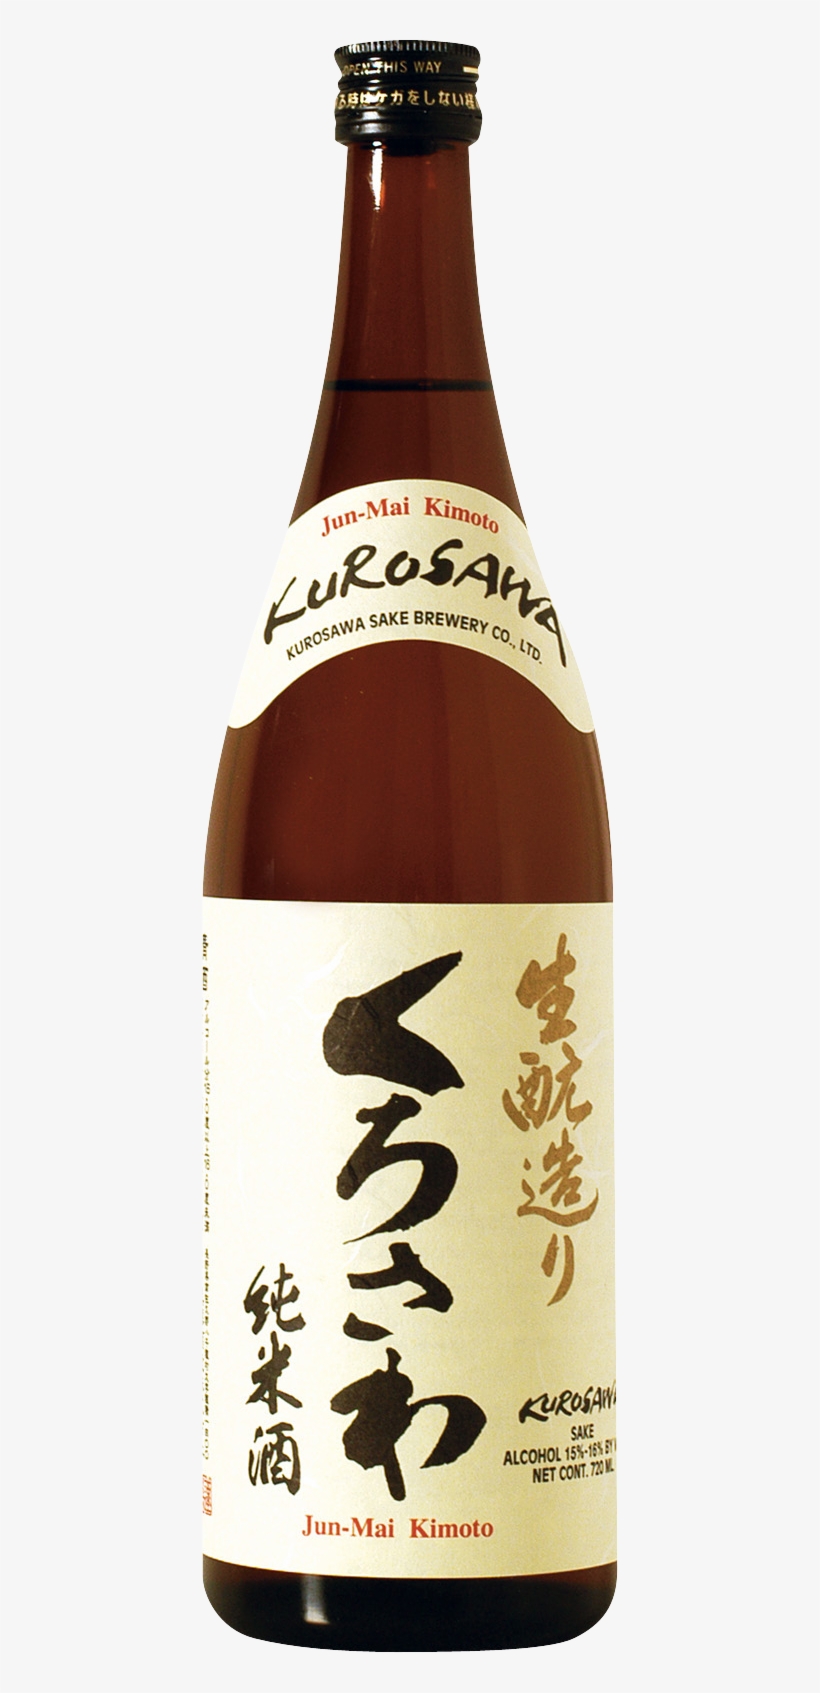 Kurosawa Junmai Kimoto - Kurosawa Sake Brewery Junmai Kimoto, transparent png #7706034